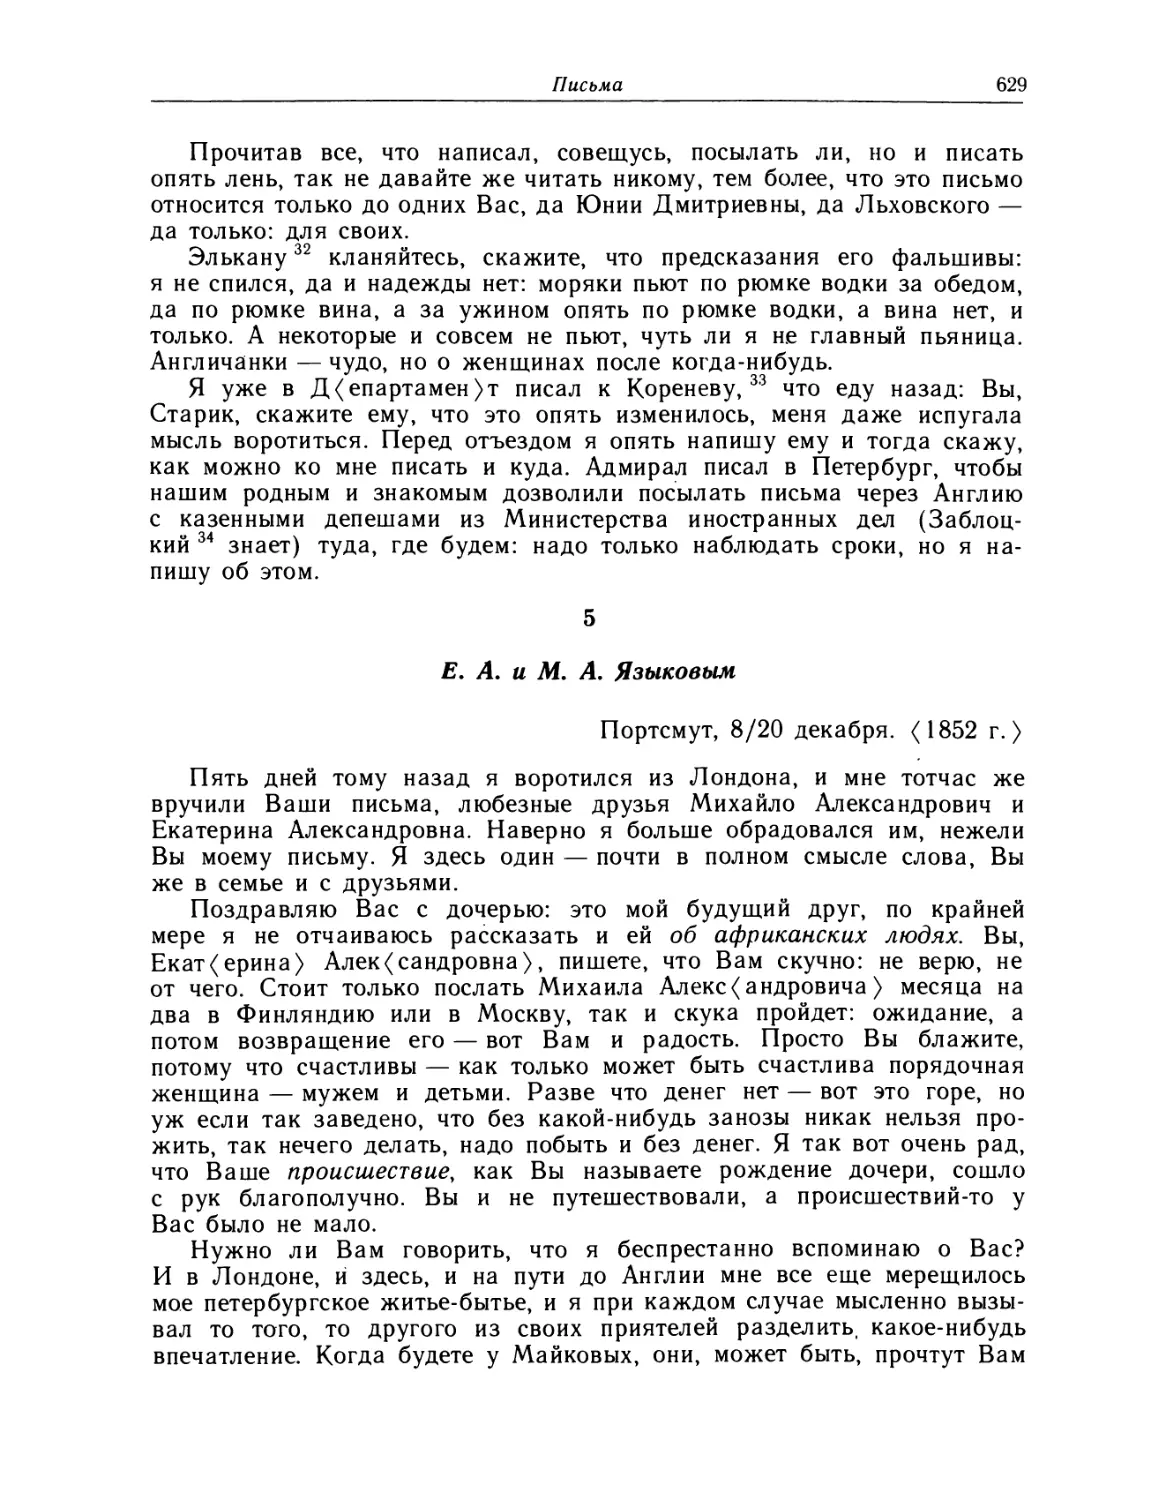 5. Е. А. и М. А. Языковым. 8/20 декабря 1852 г.